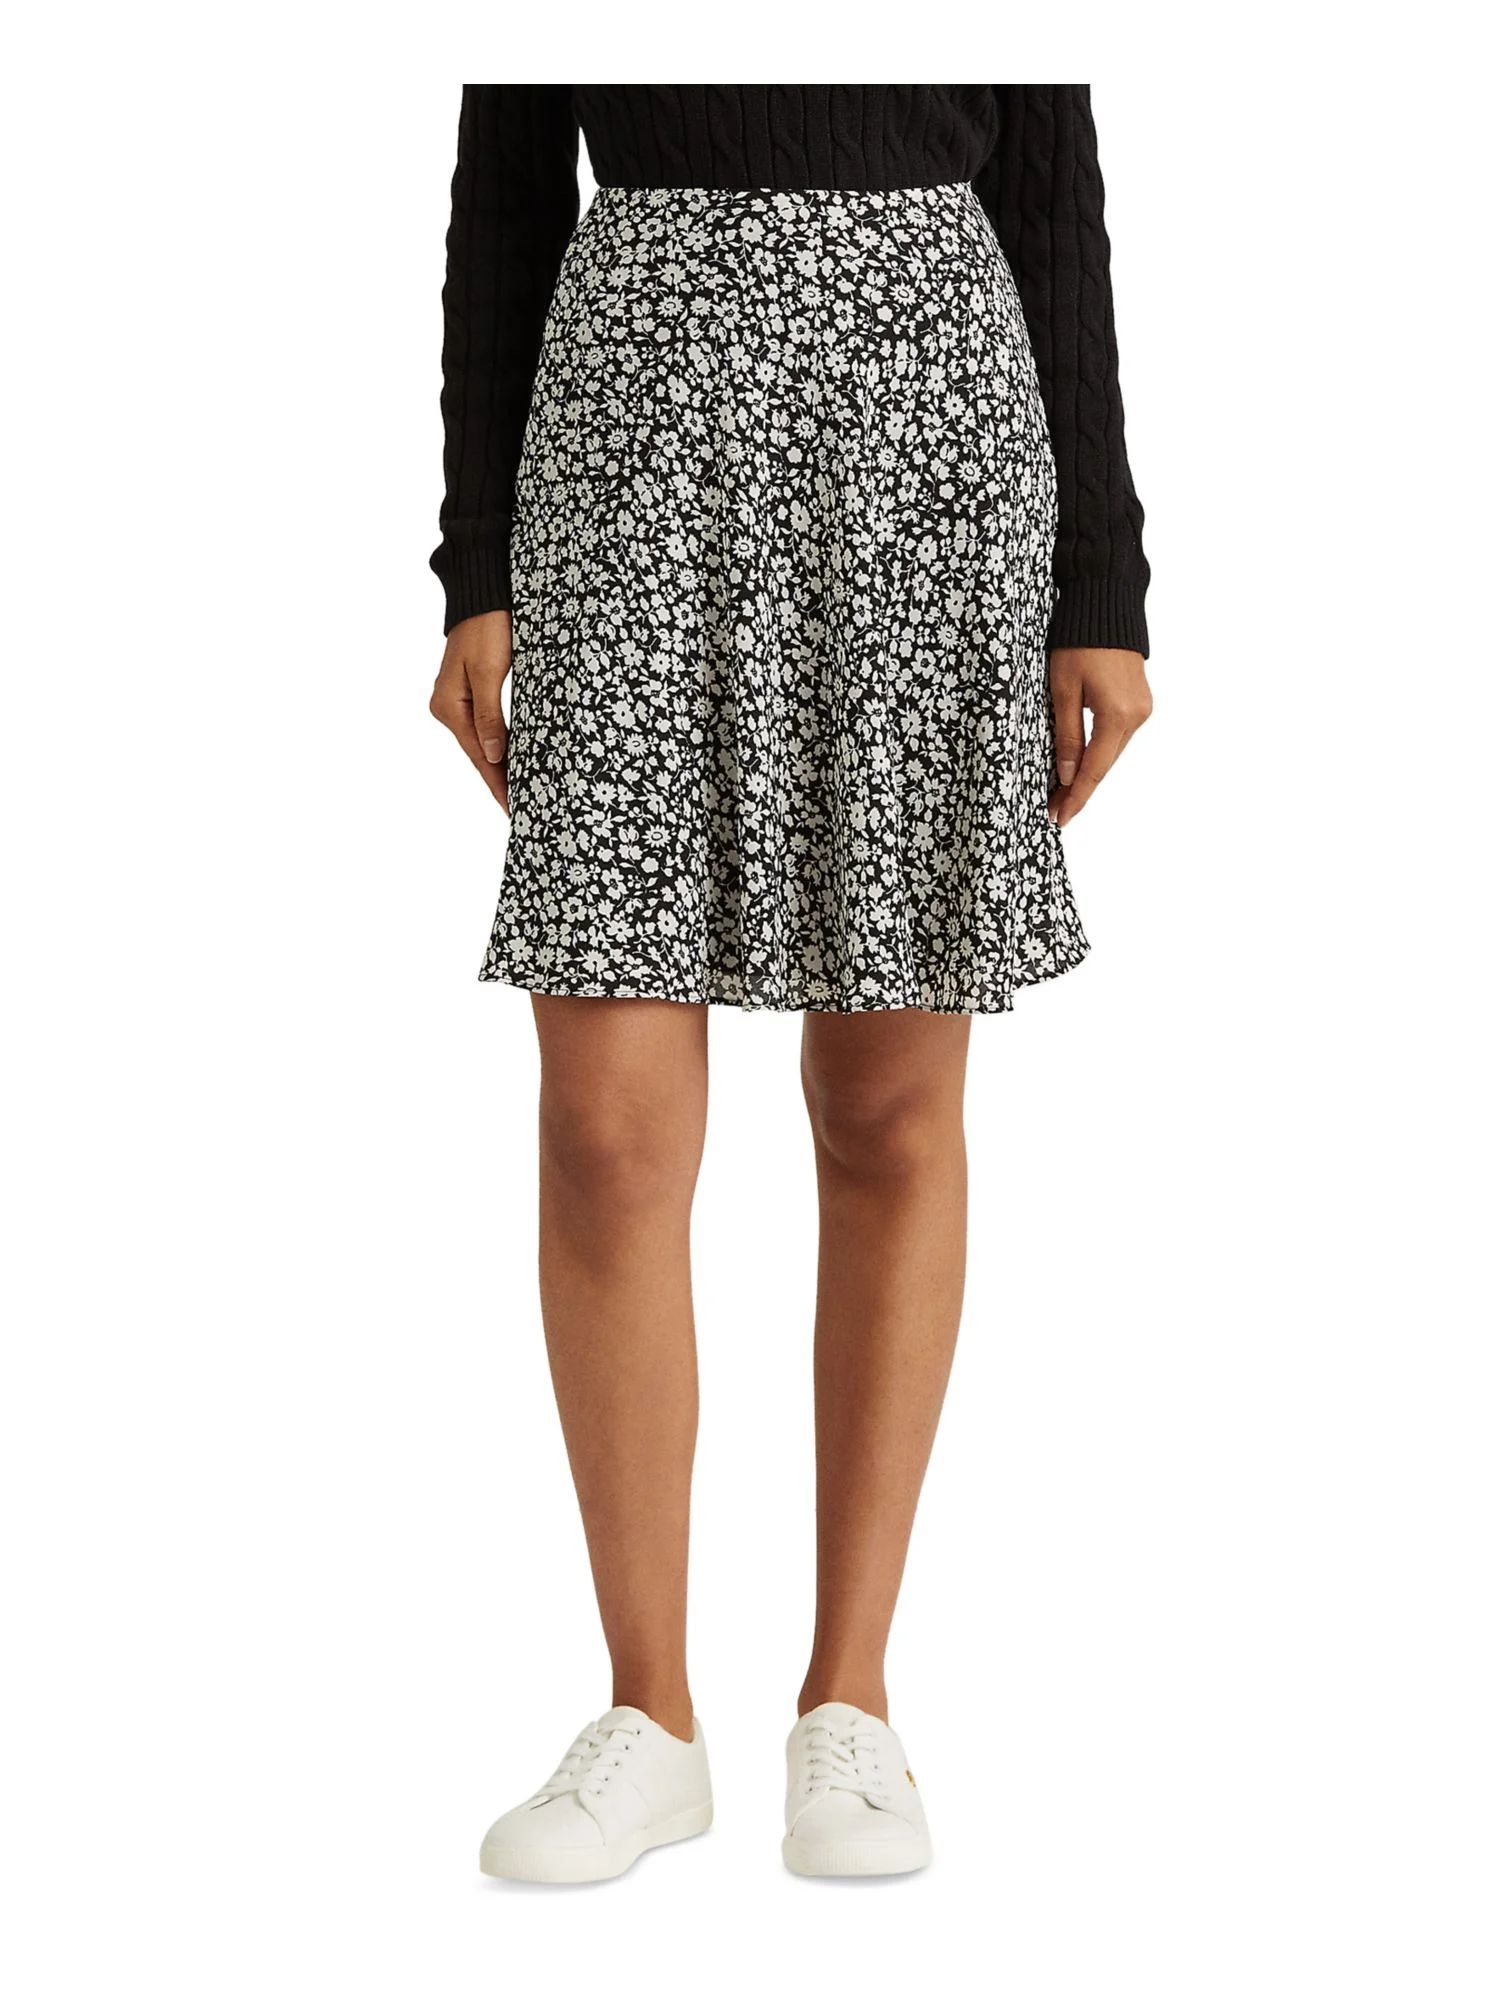 LAUREN RALPH LAUREN Womens Black Zippered Lined Floral Above The Knee Wear To Work A-Line Skirt 2 | Walmart (US)